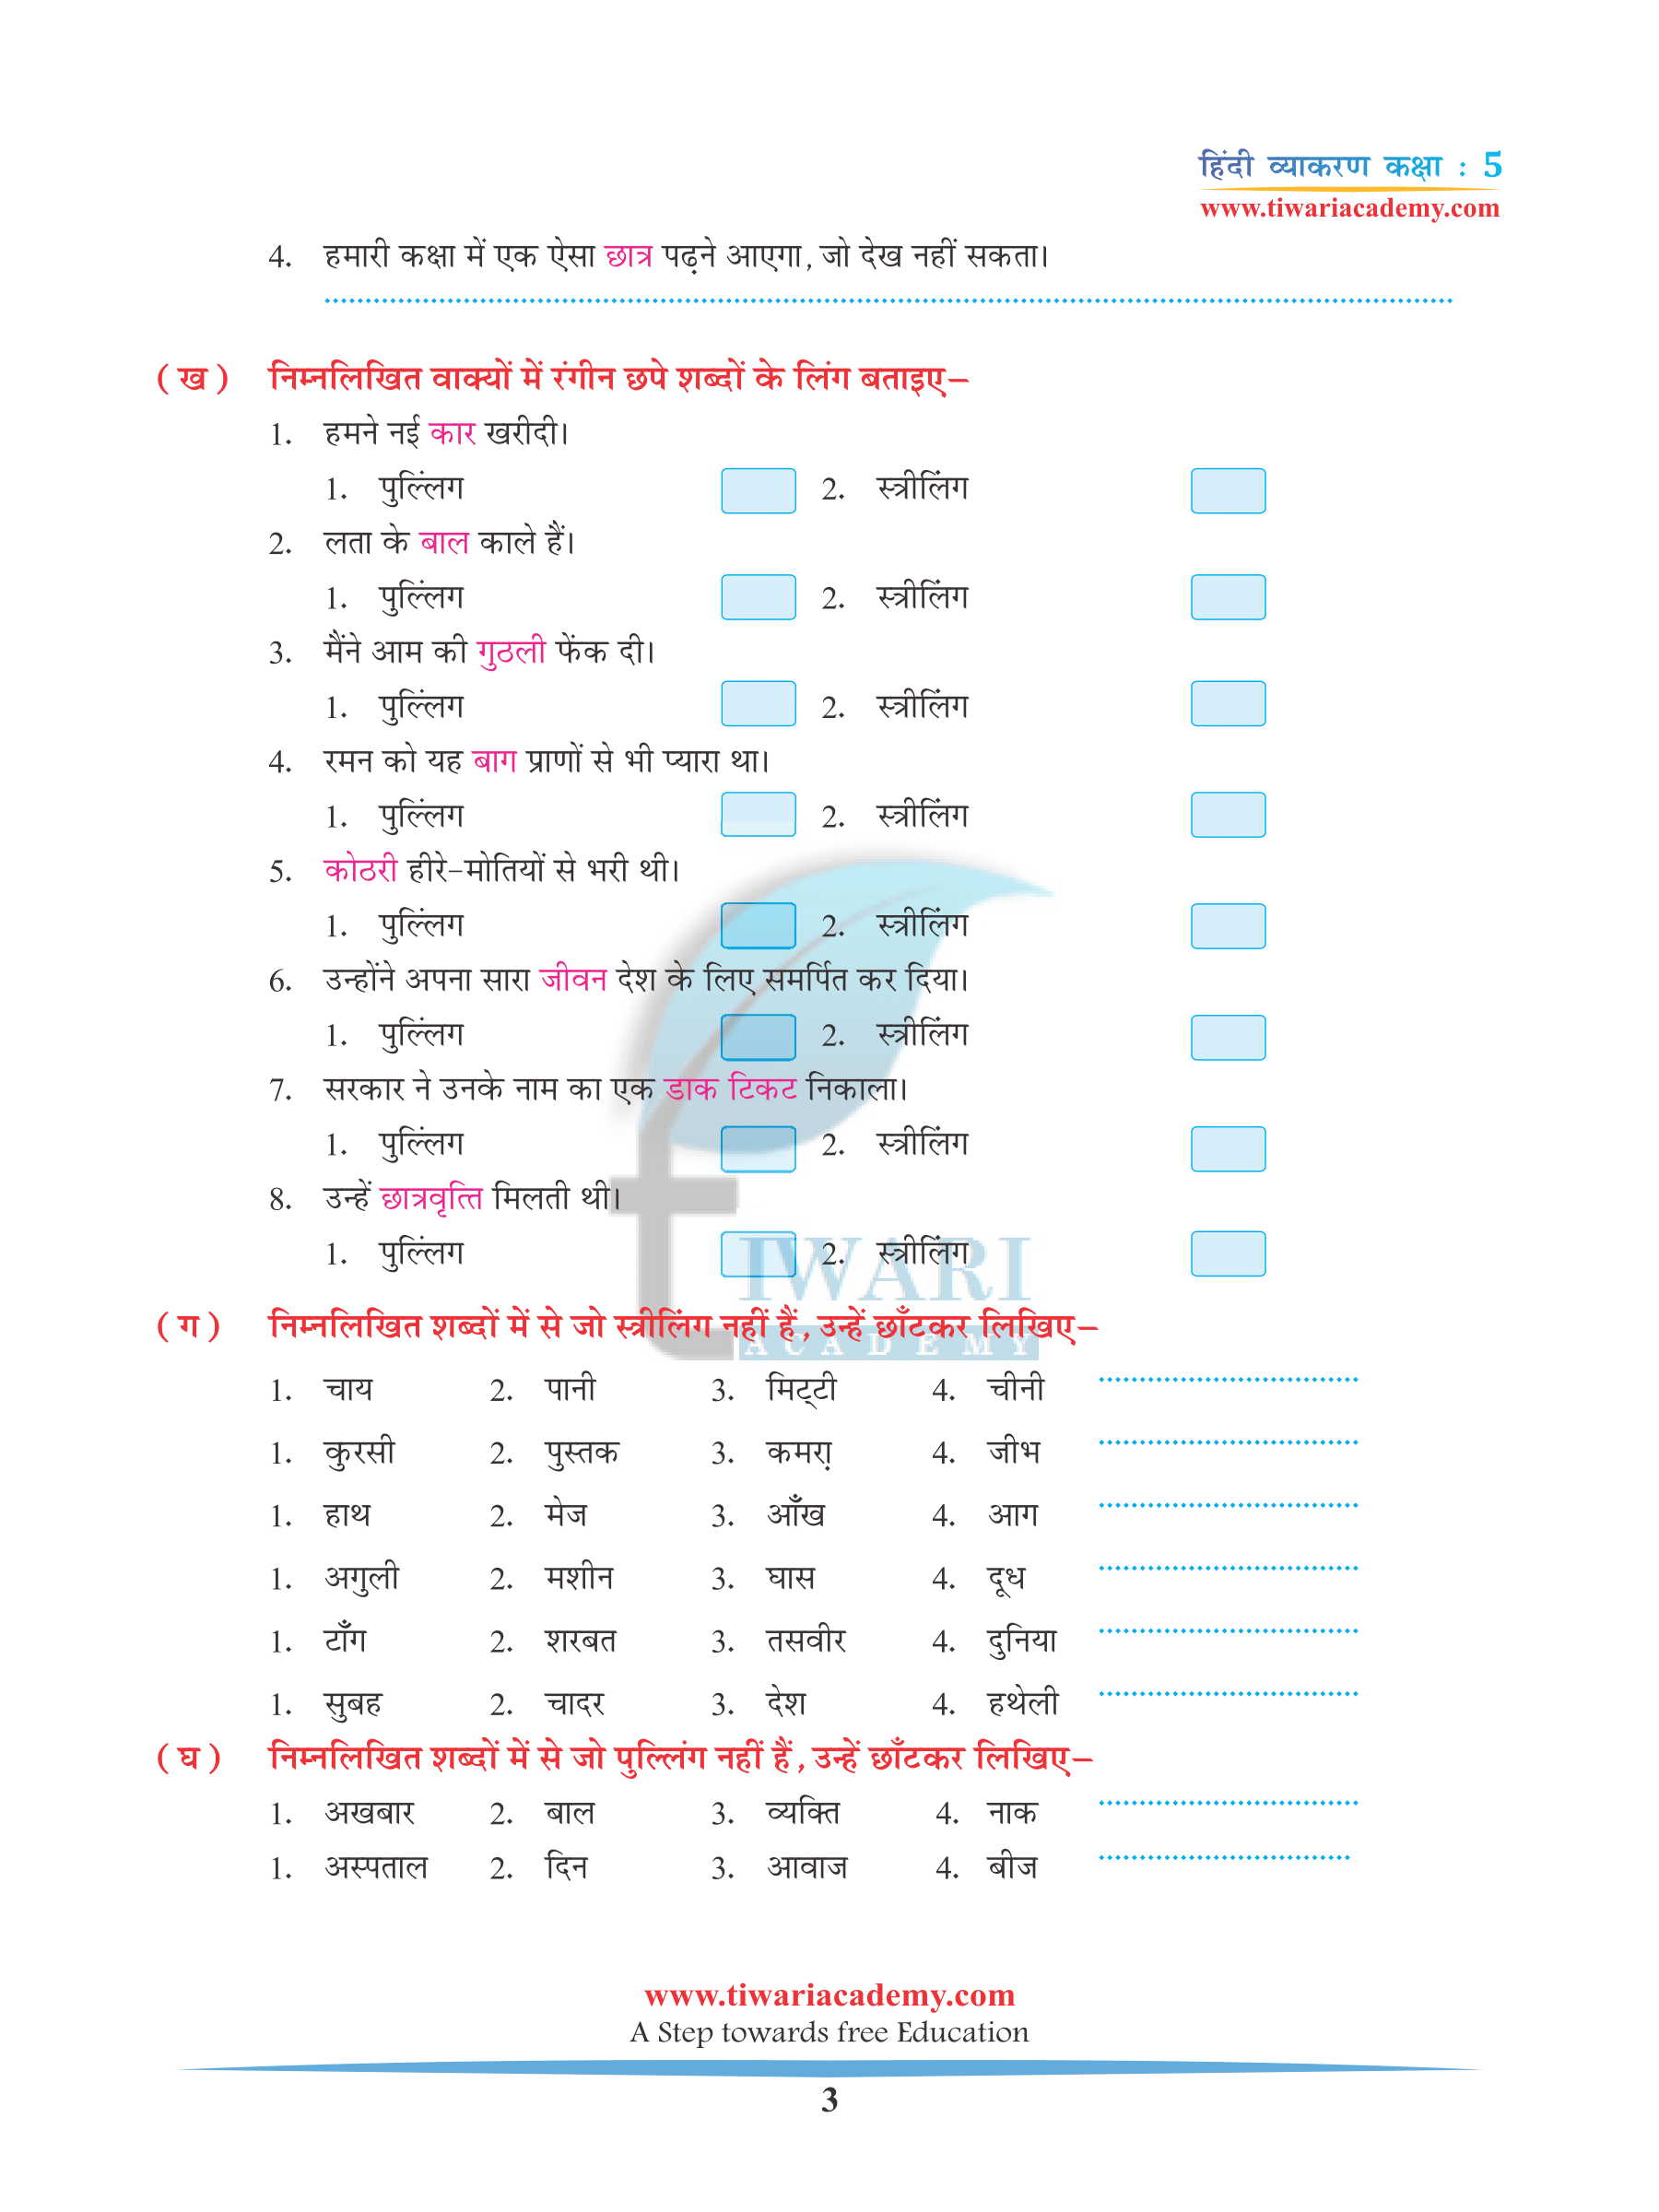 Class 5 Hindi Grammar Chapter 4 Ling, Vachan aur Kaarak